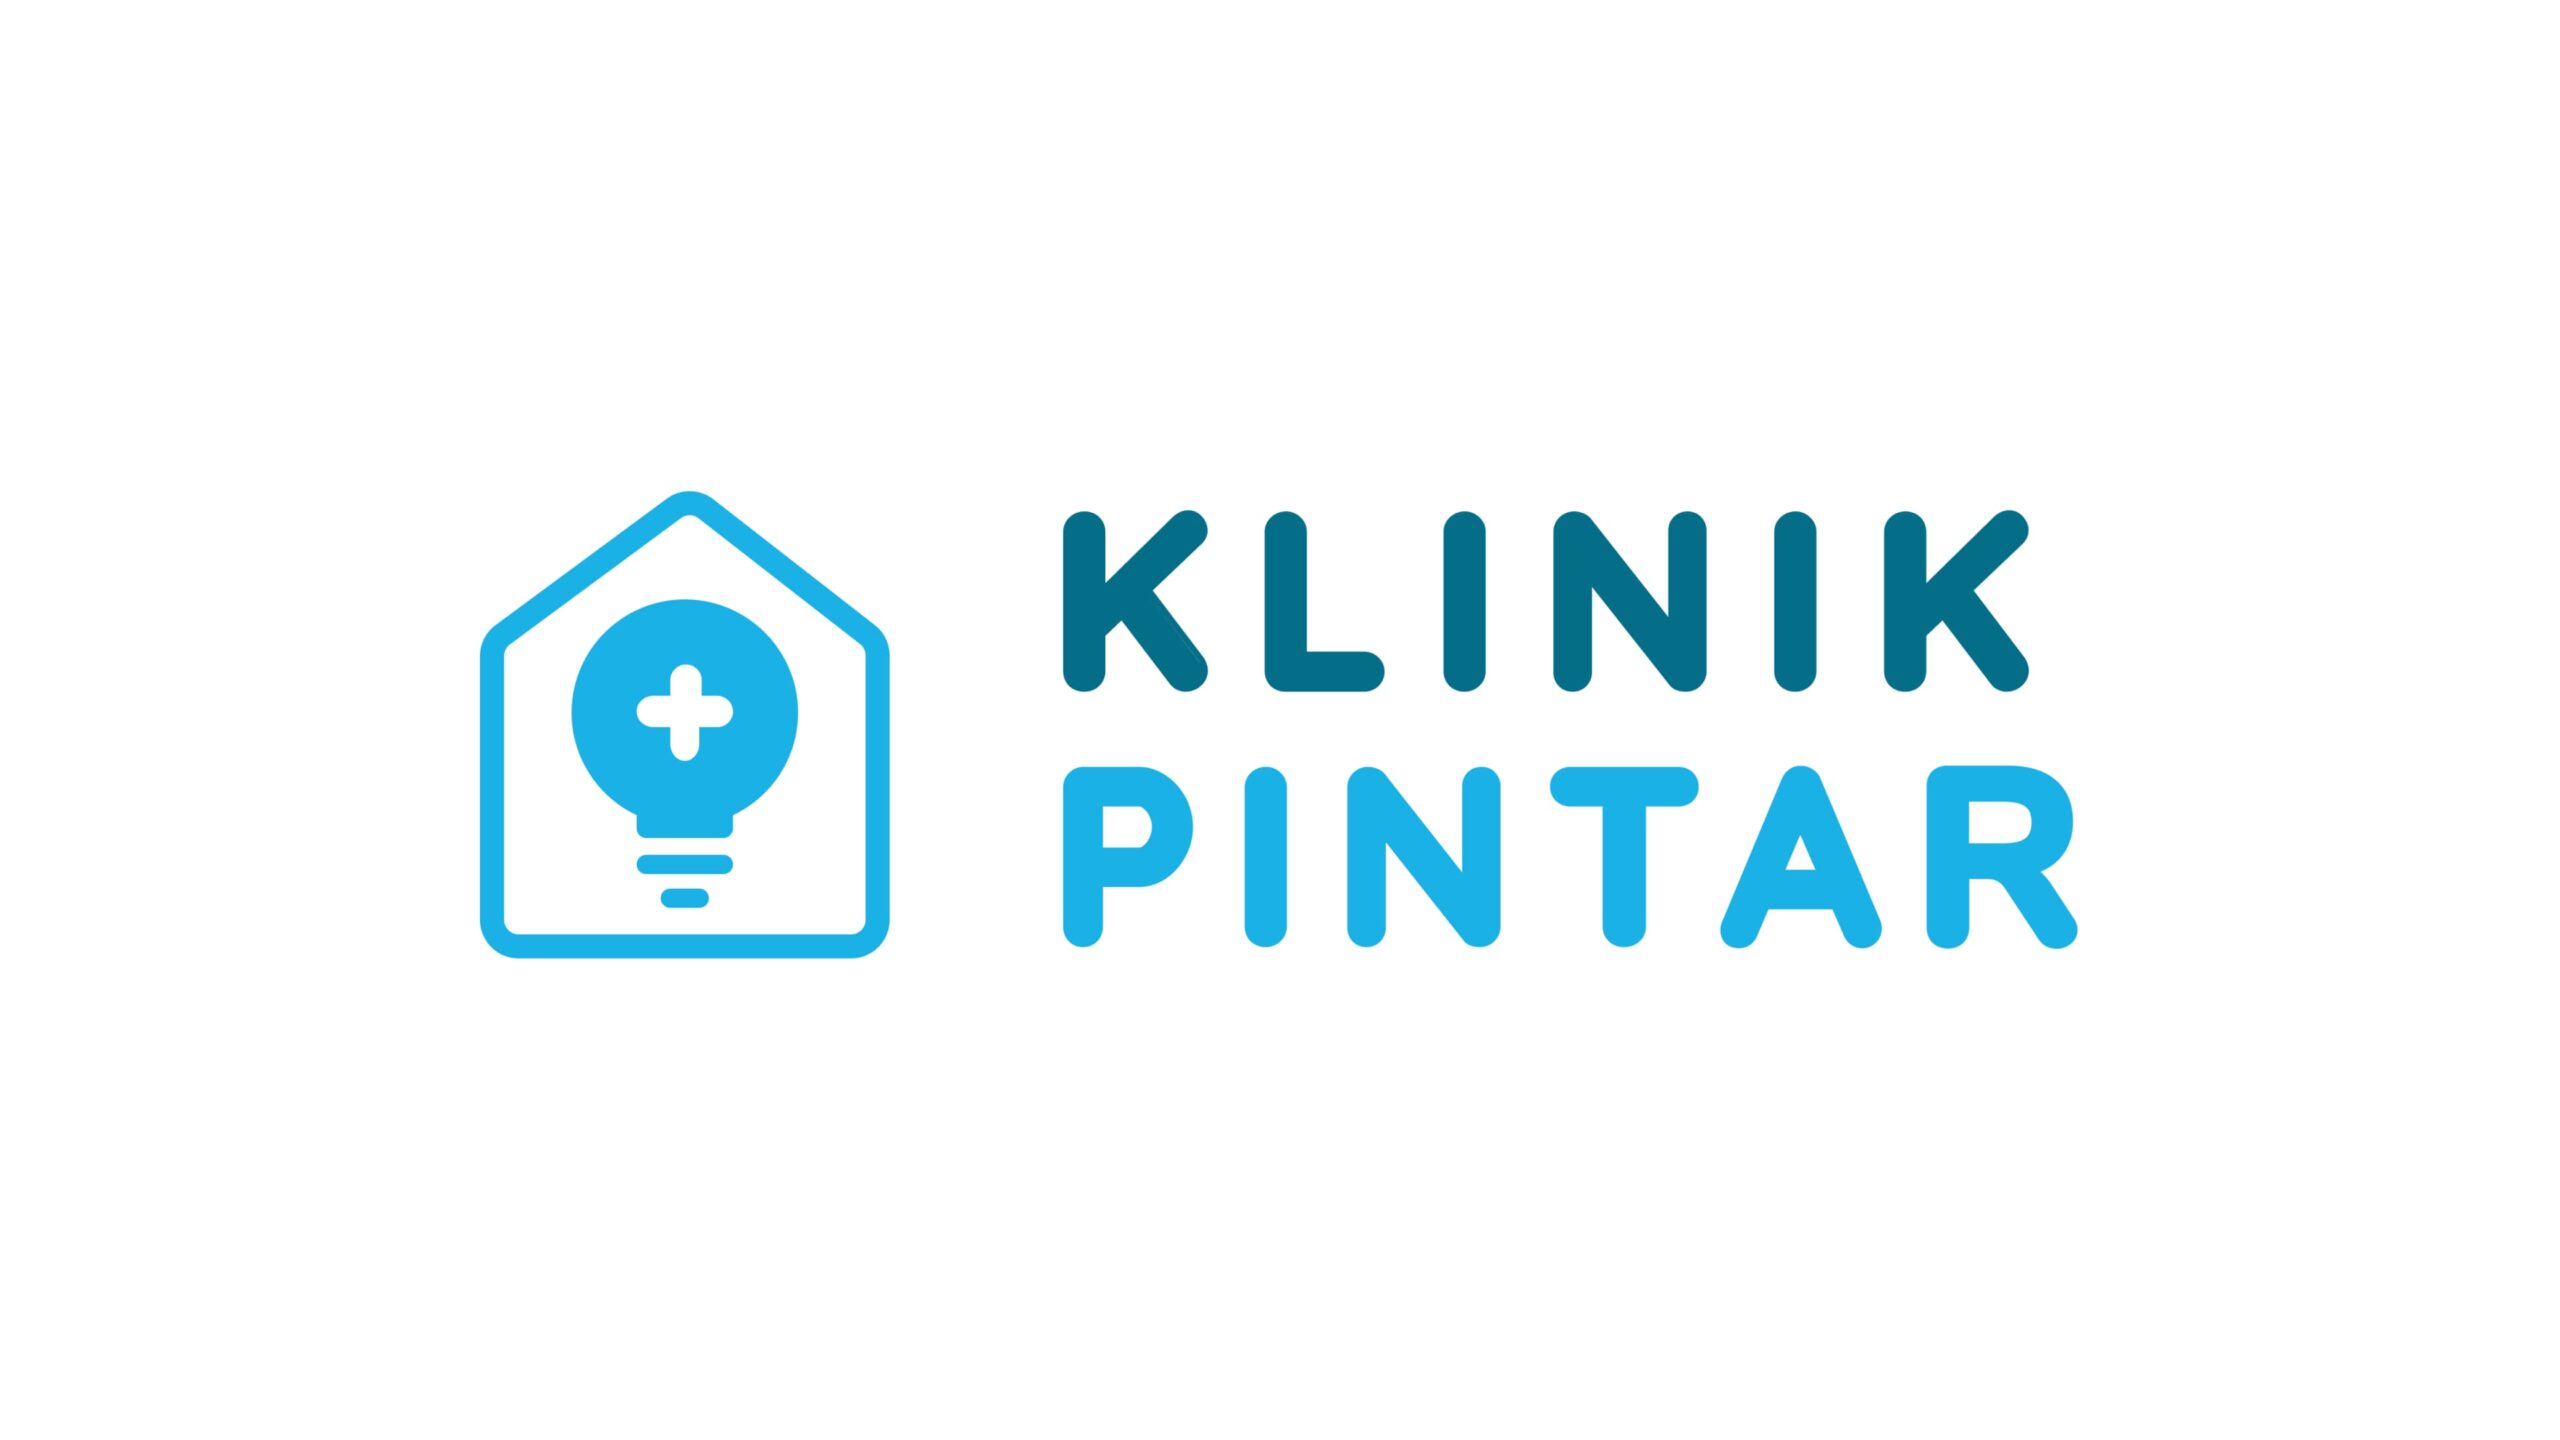 ジャカルタのヘルステックスタートアップKlinik Pintarが500万ドルの資金調達